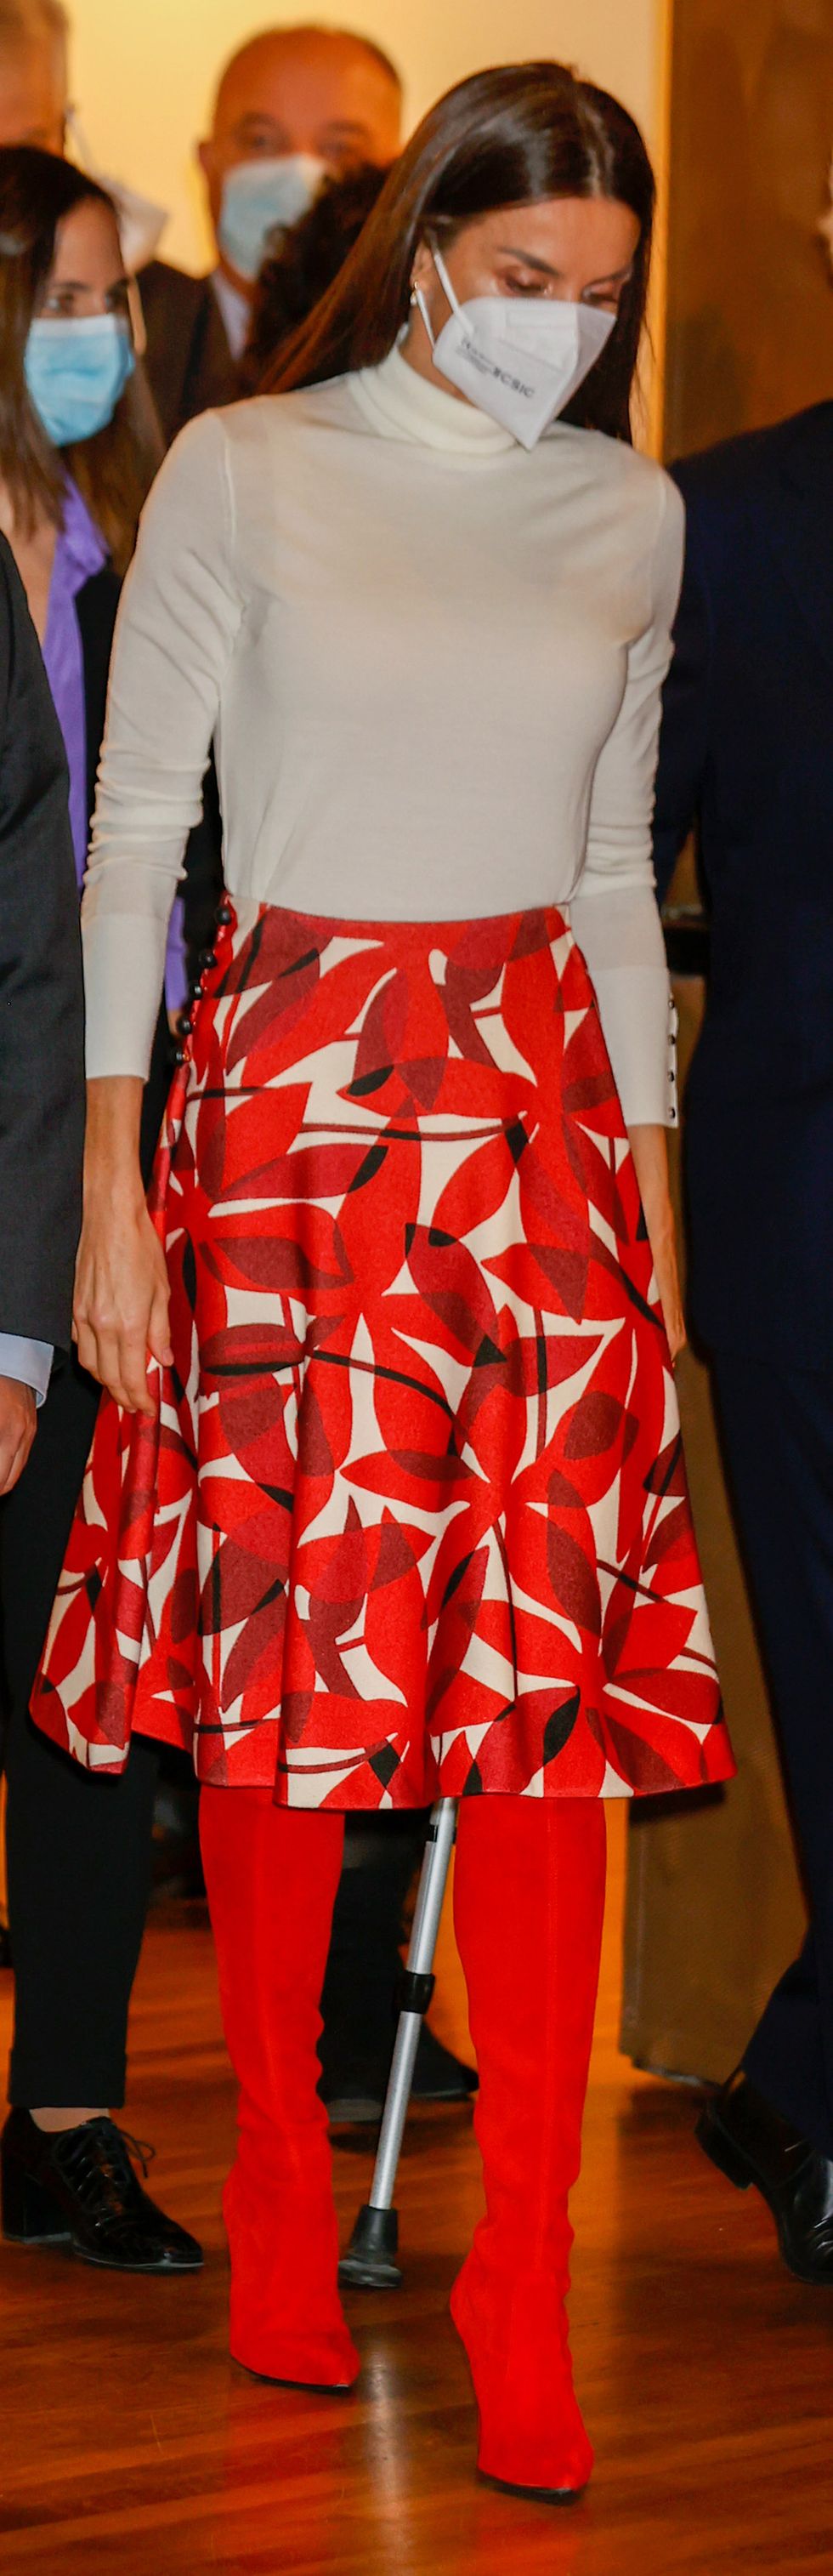 La reina Letizia recicla su falda roja estampada con botas altas